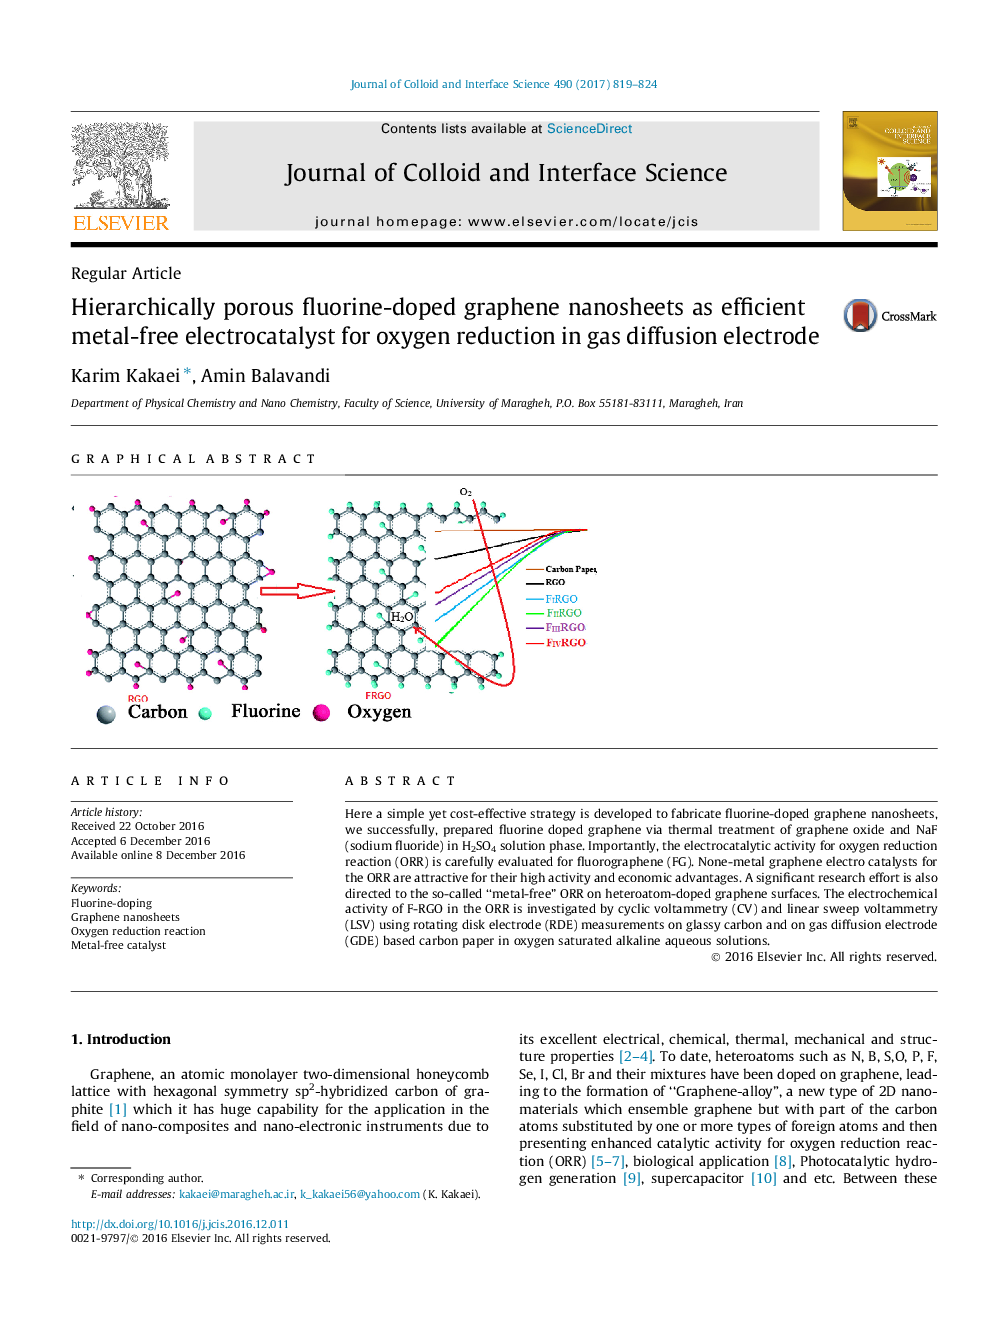 نانو ذرات گرافنی متخلخل فلوراید دو طرفه به عنوان کارآمد الکتروکاتالیست کارآمد بدون فلز برای کاهش اکسیژن در الکترود انتشار گاز 